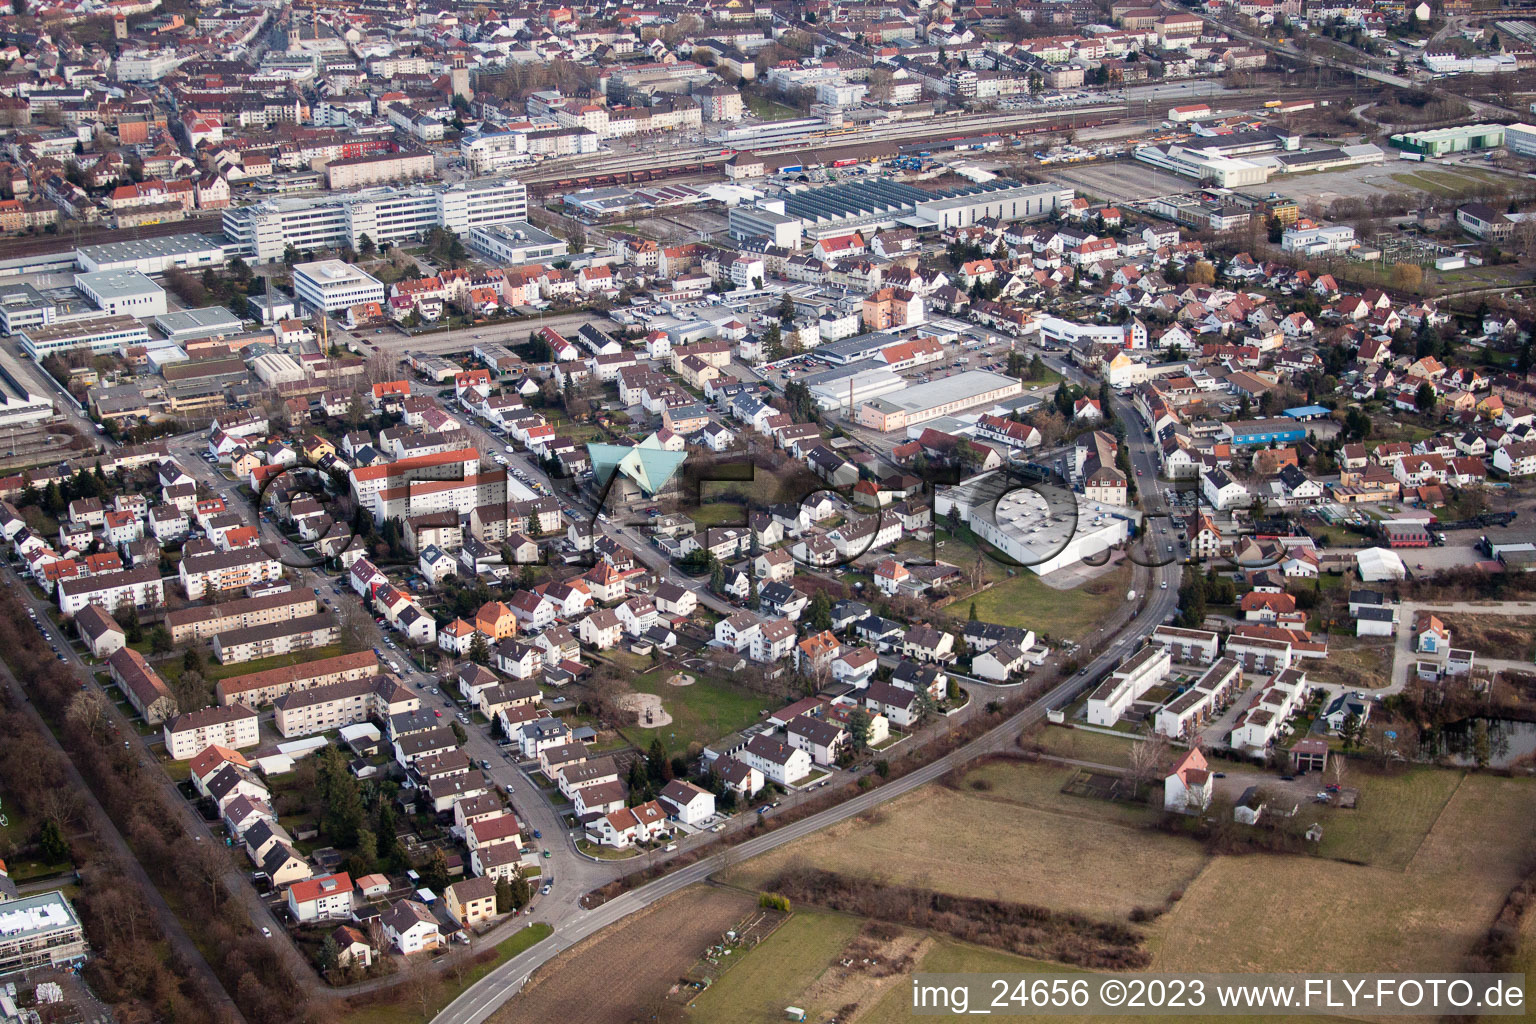 Vue aérienne de St. Joseph à Bruchsal dans le département Bade-Wurtemberg, Allemagne